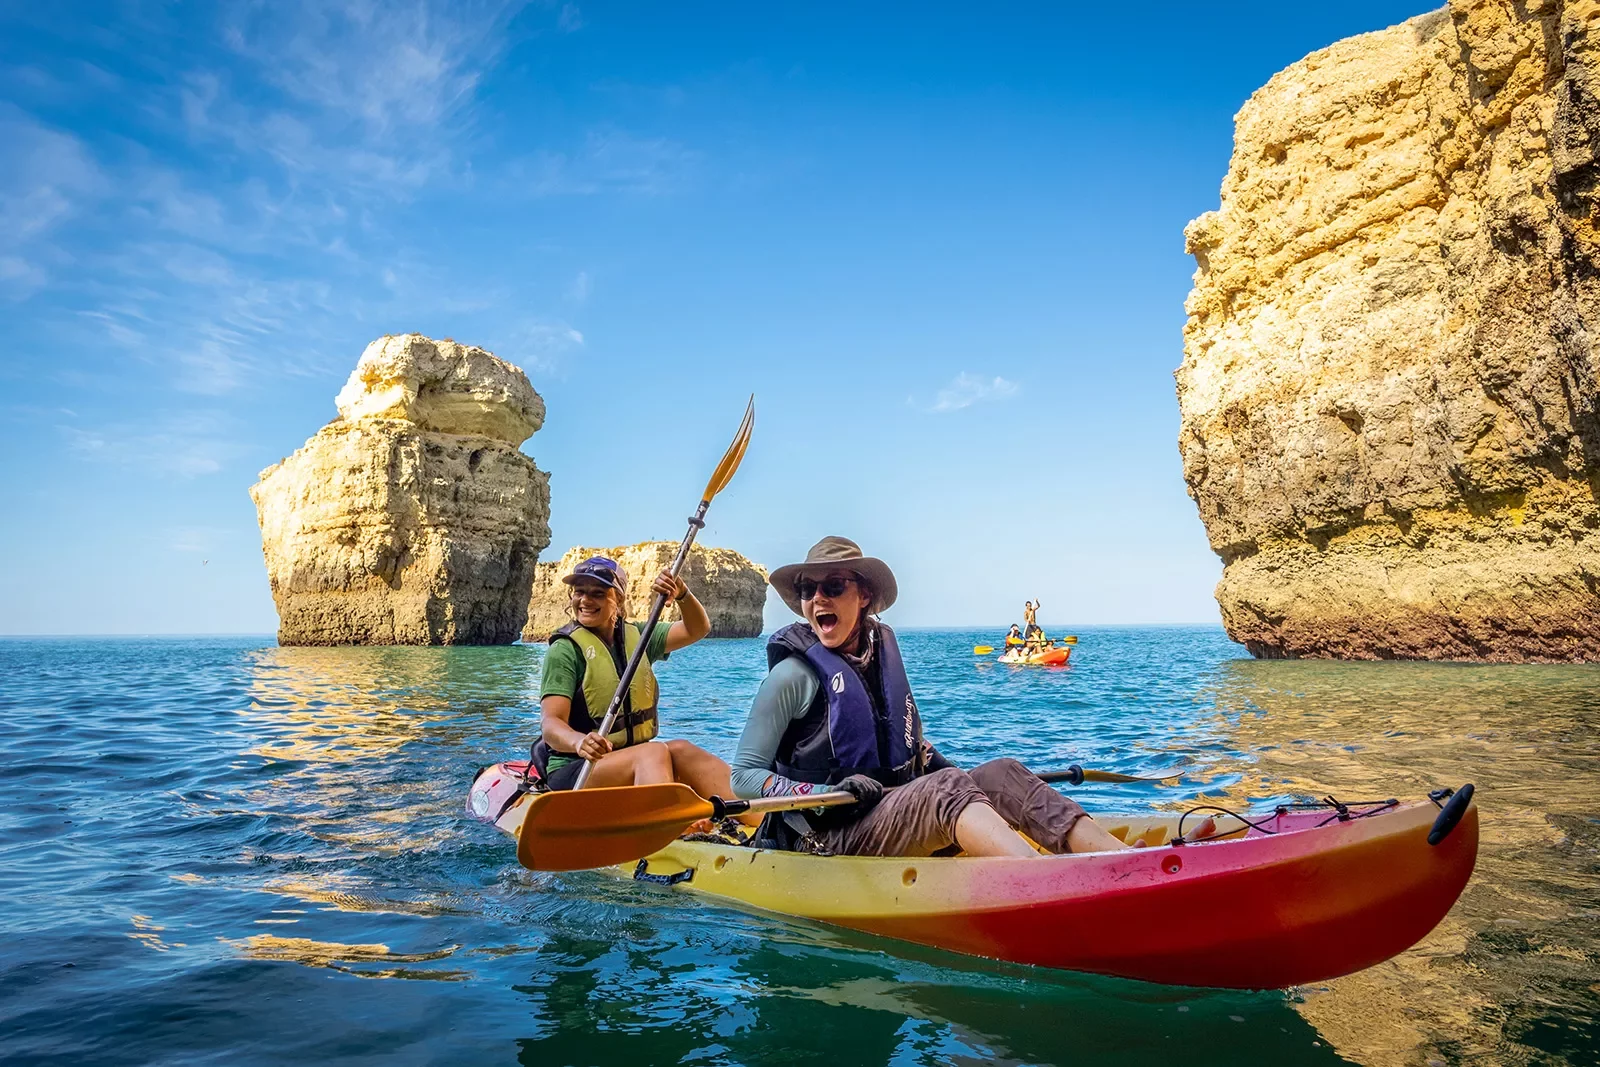 Kayaking among towering rocks in Portugal